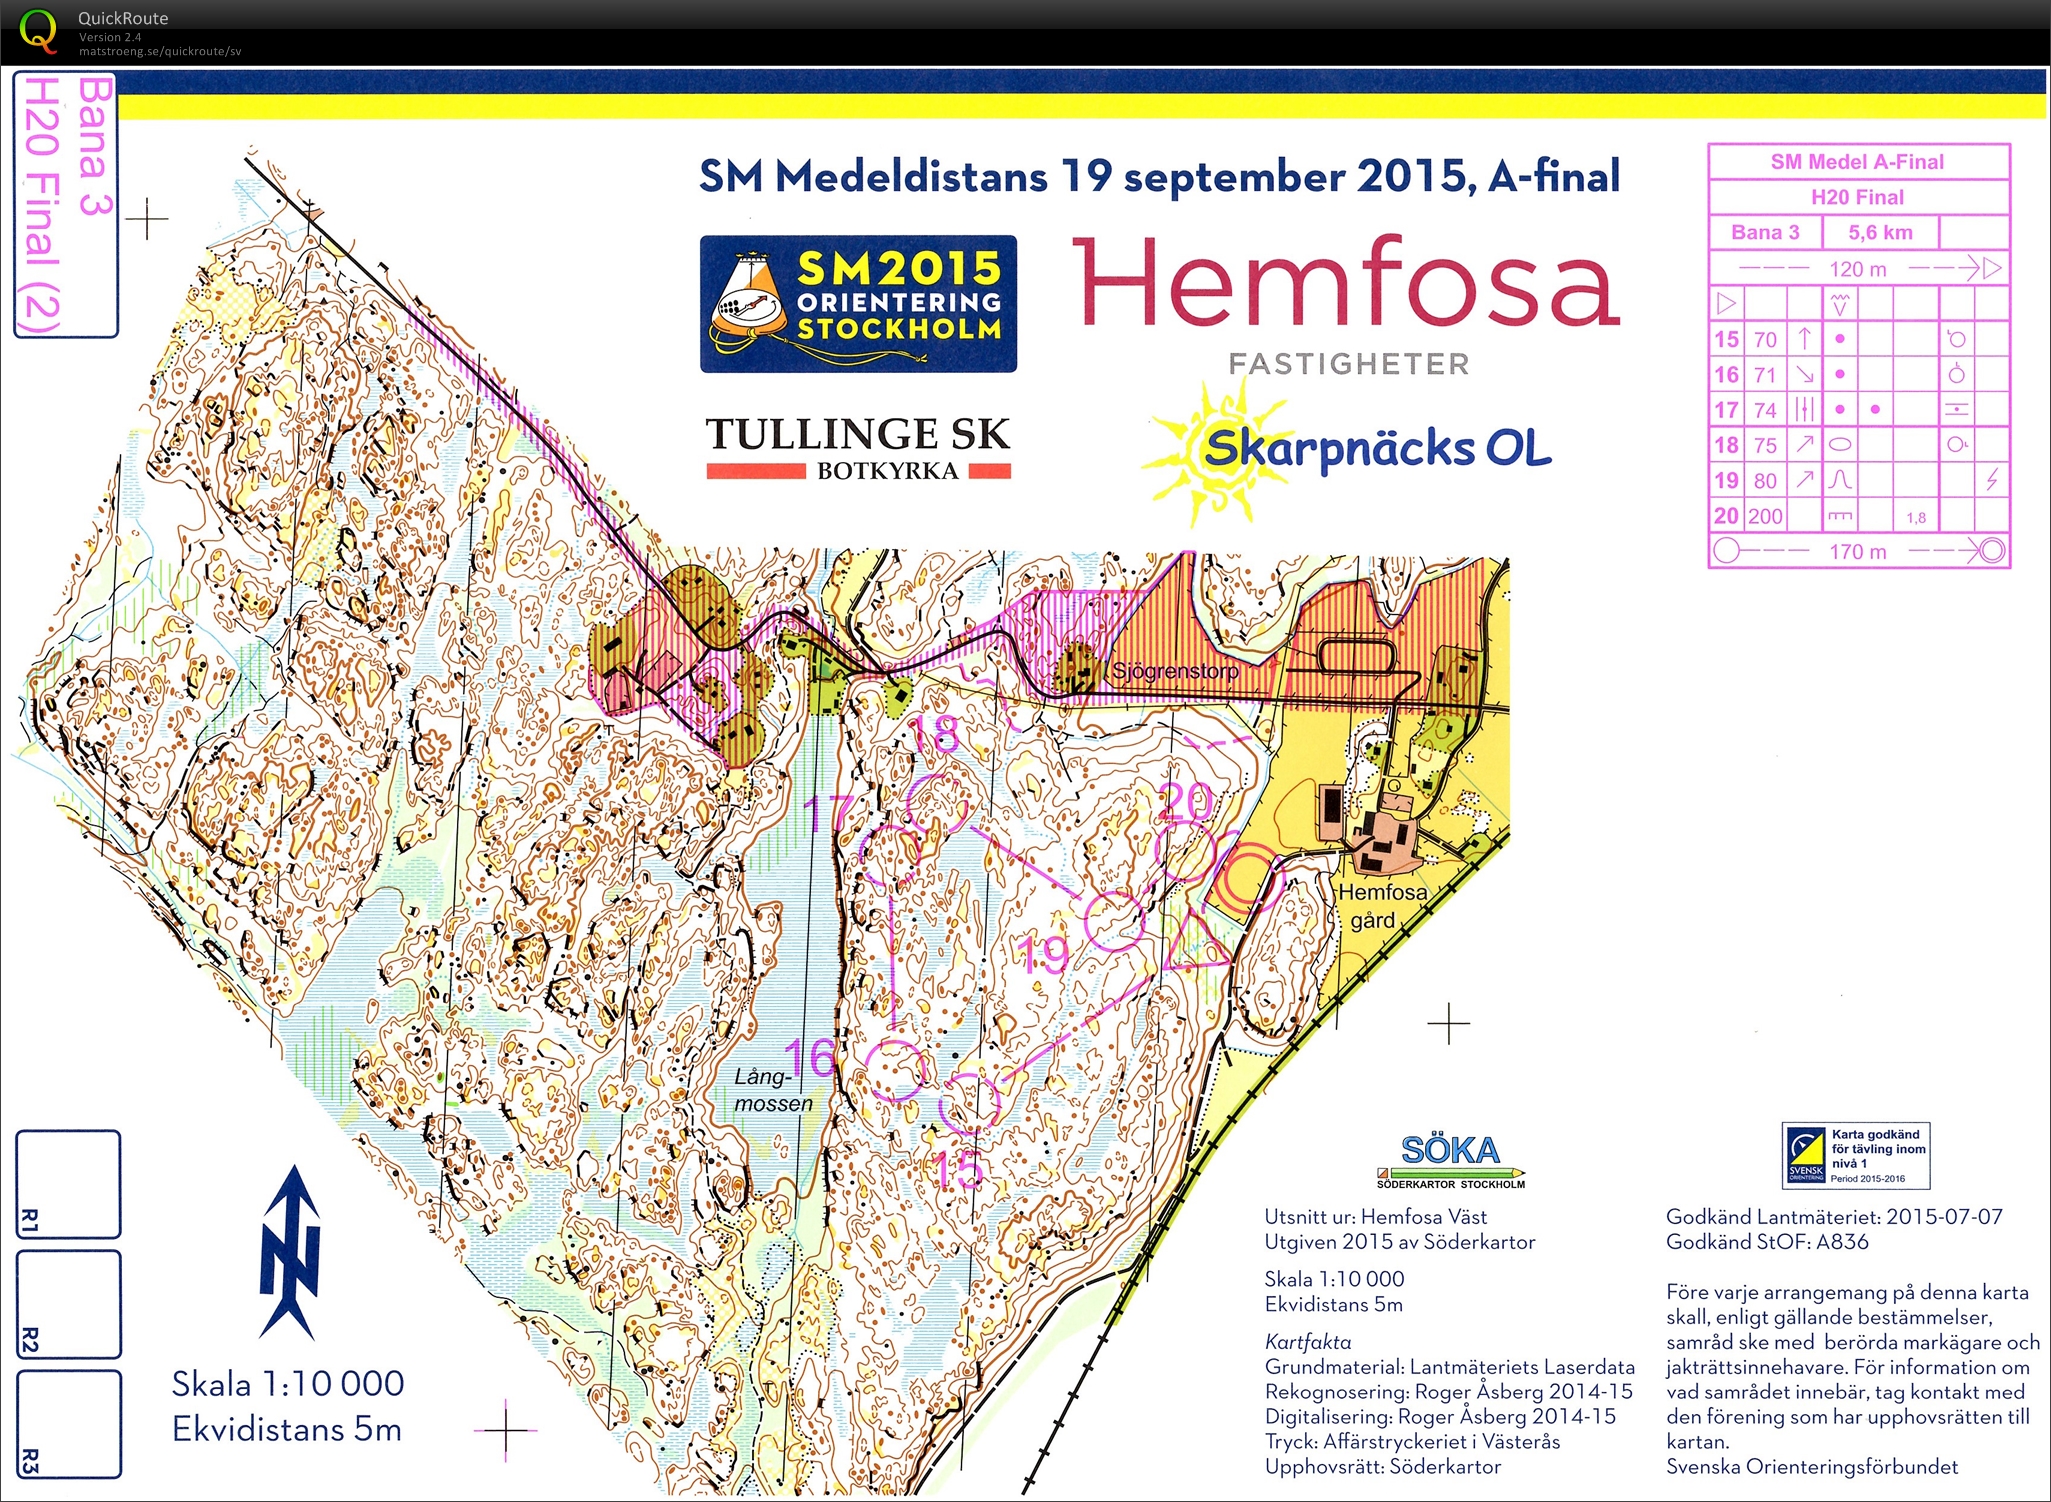 SM Medel, Final, del 2 (19-09-2015)